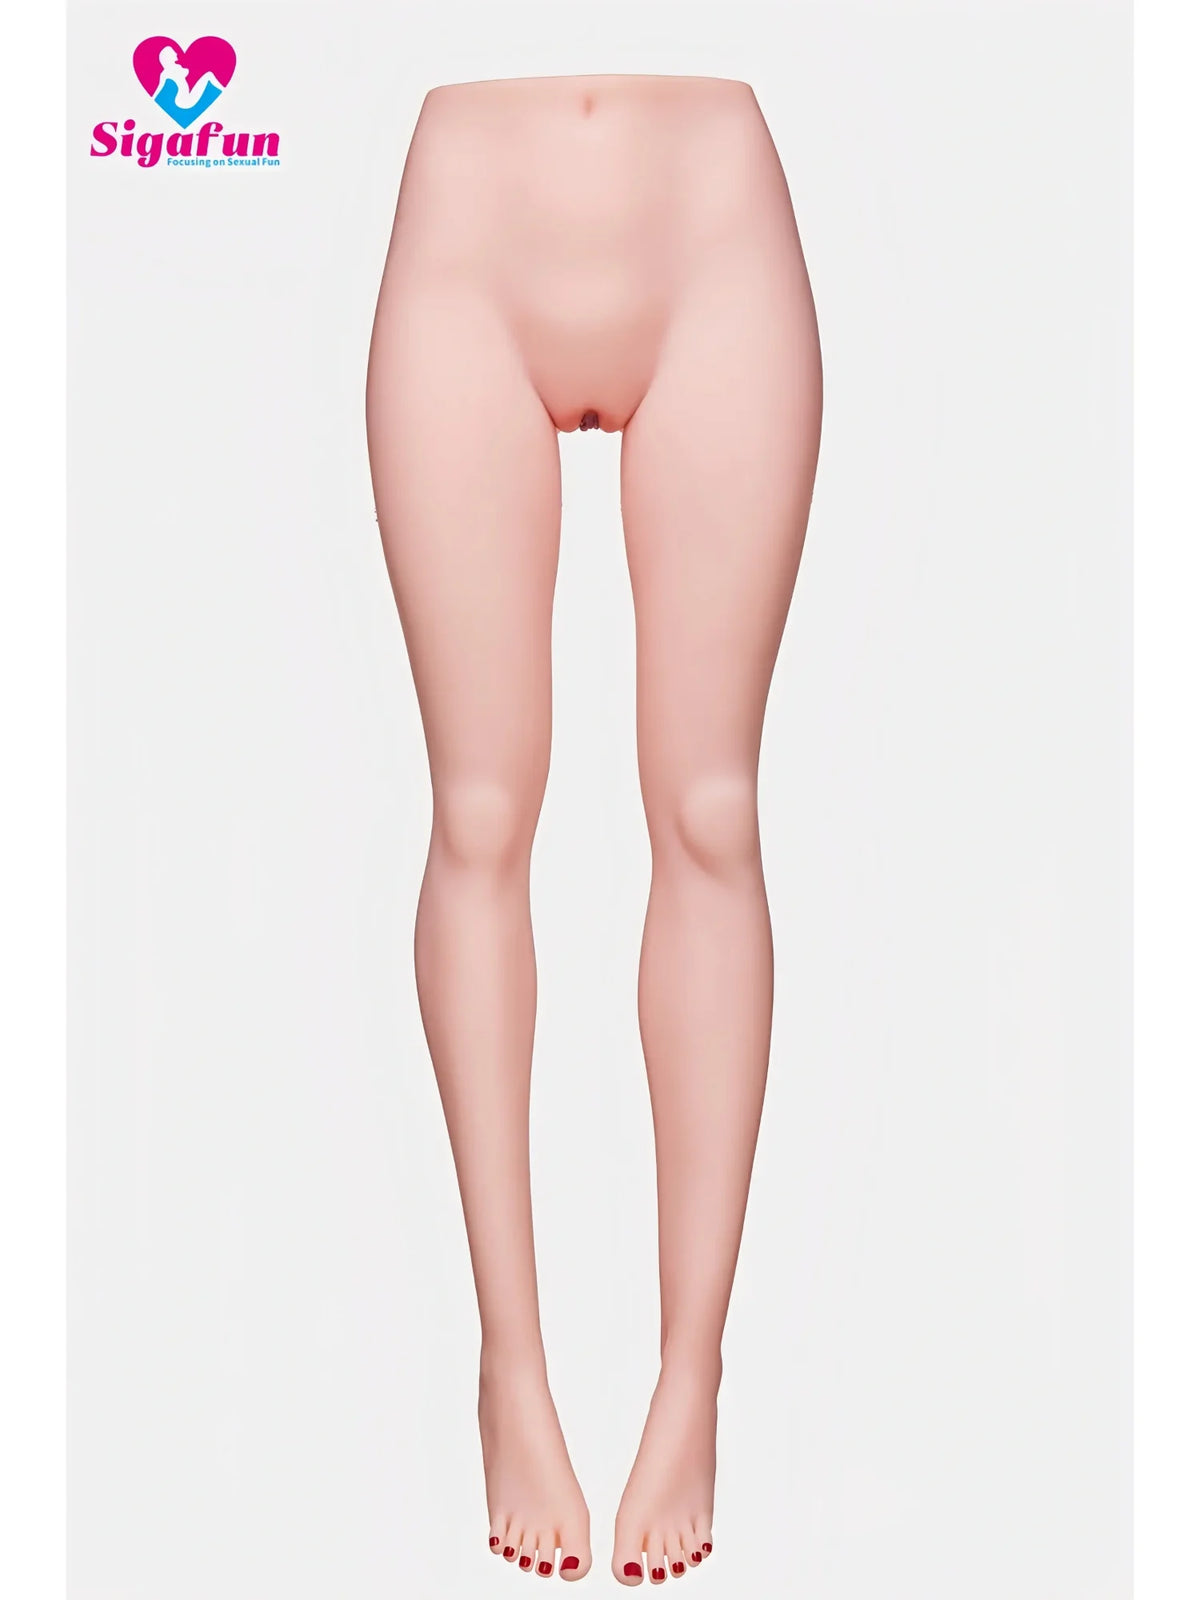 L38 (48lb/106cm) Sex Doll Legs-Skinny And Passion Legs Torso